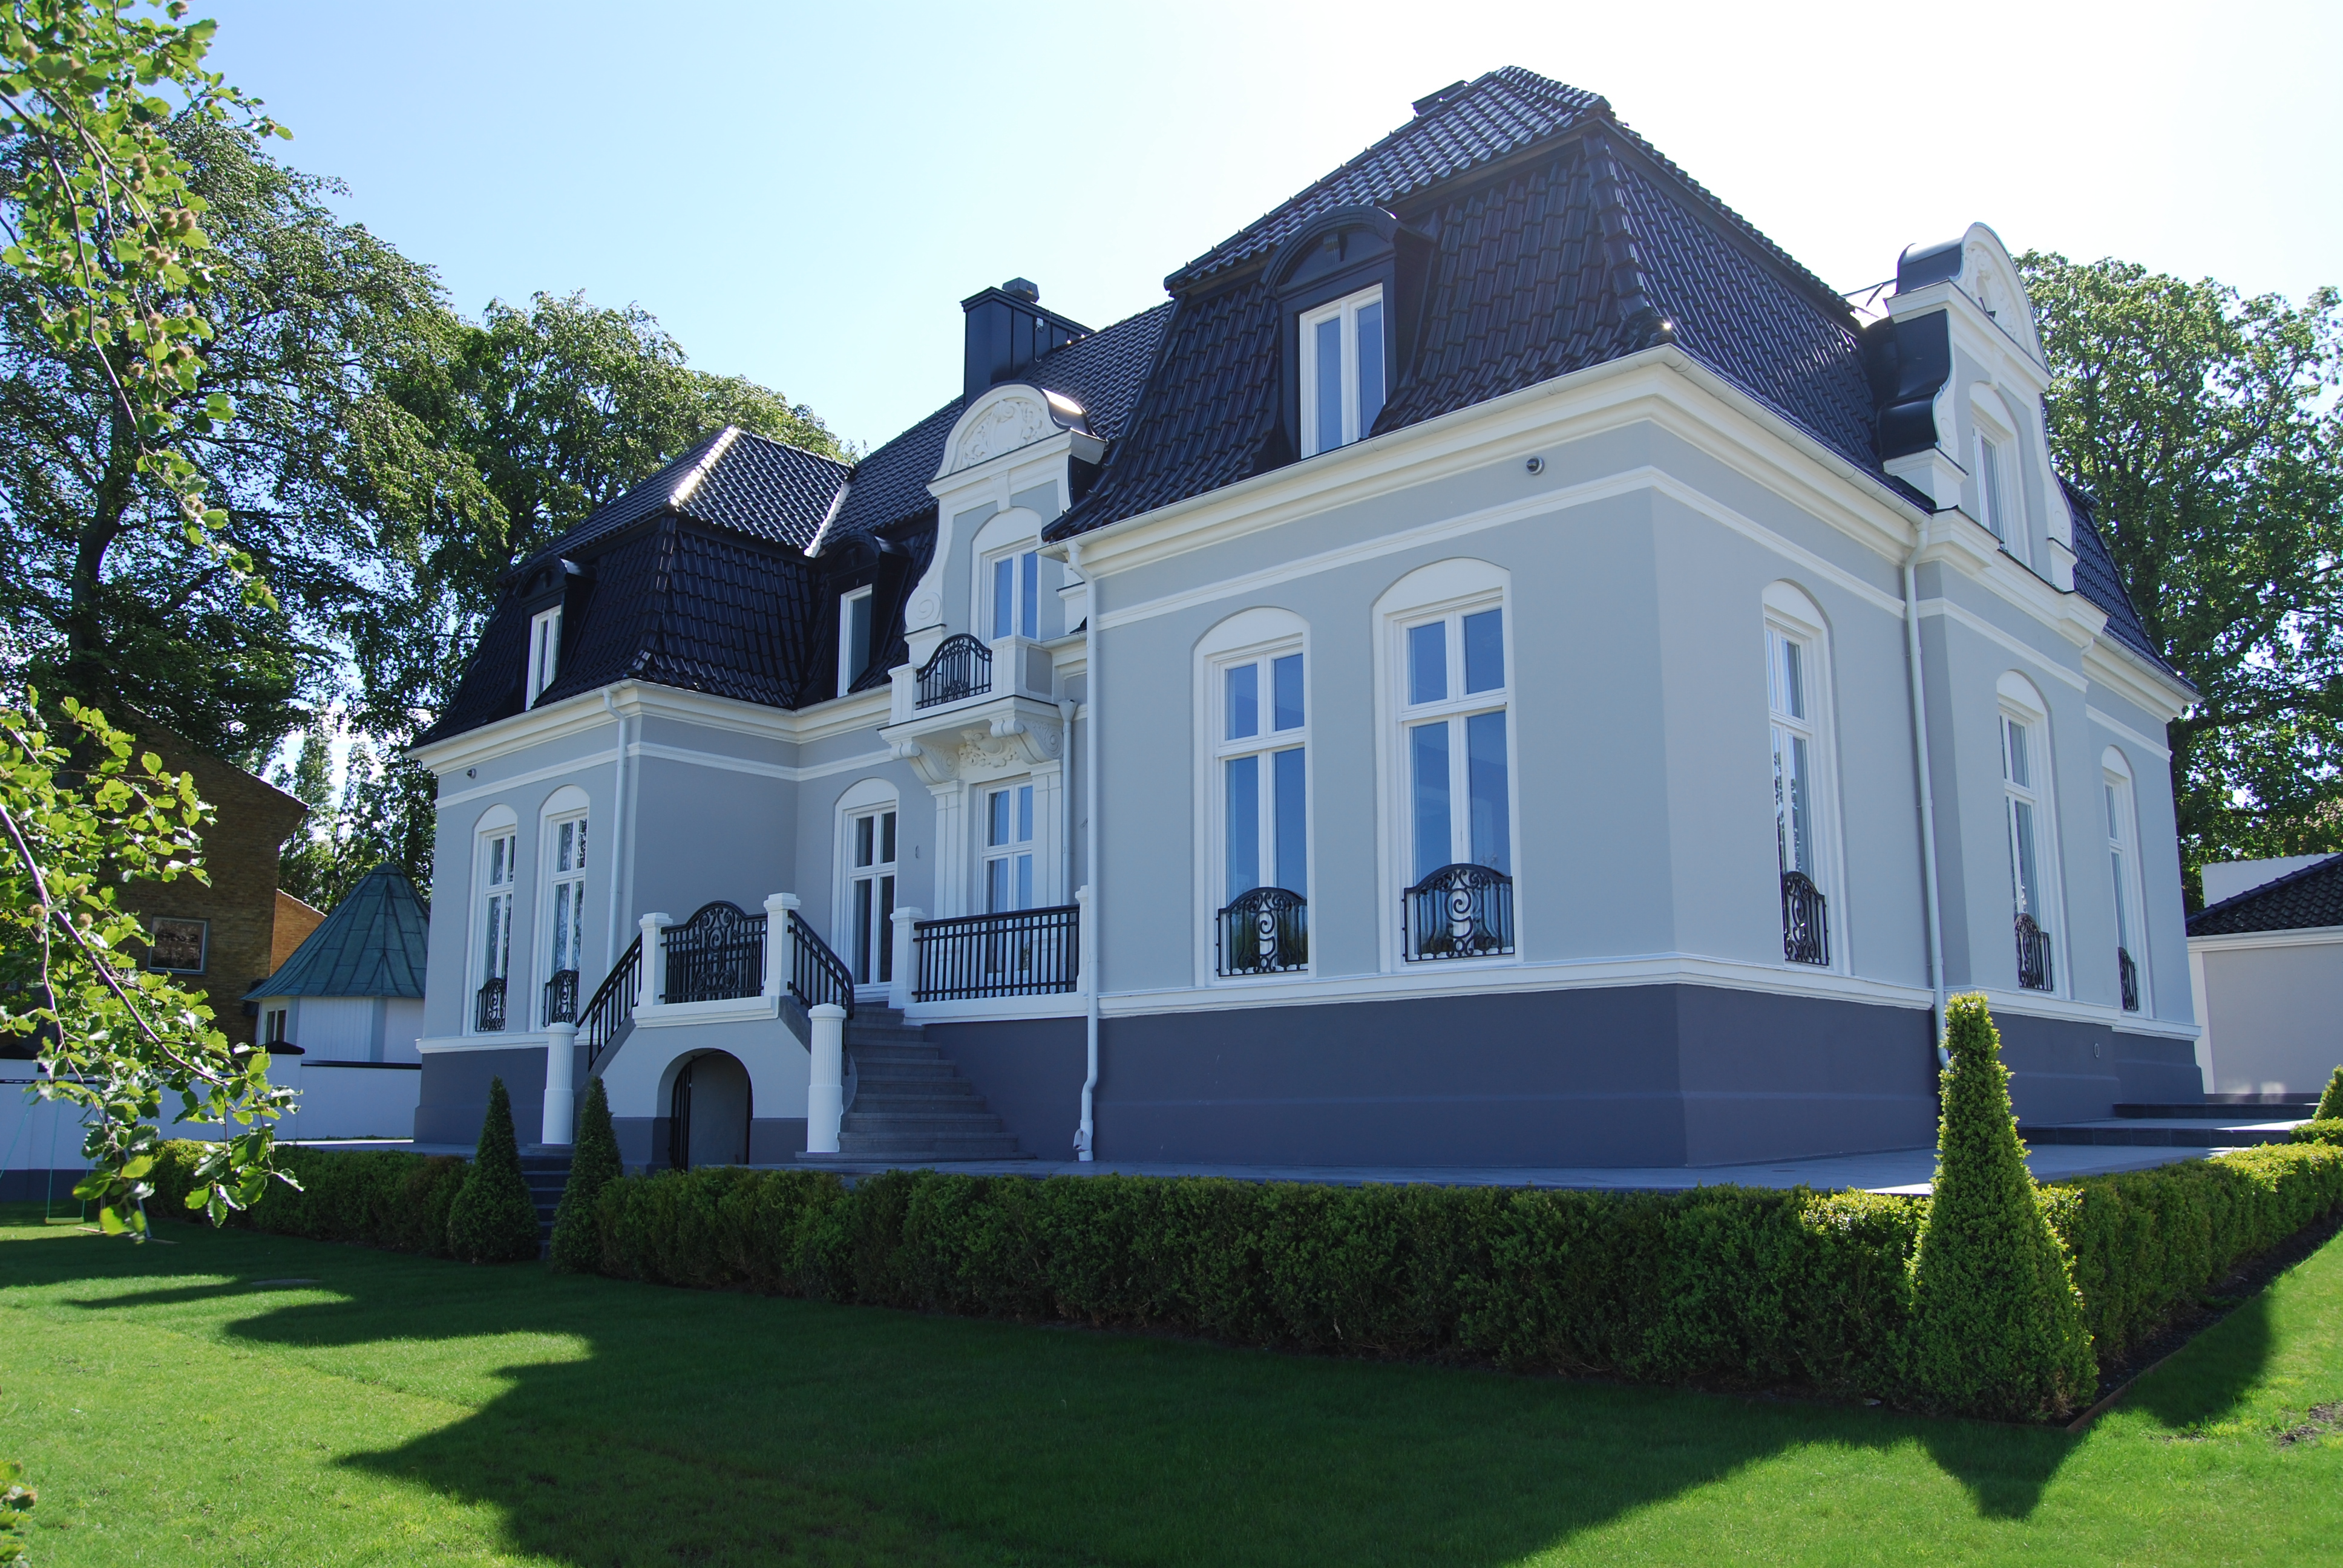 2007 köpte de huset för 30 miljoner - men nu säljer Zlatan och Helena Seger huset i Limhamn. 